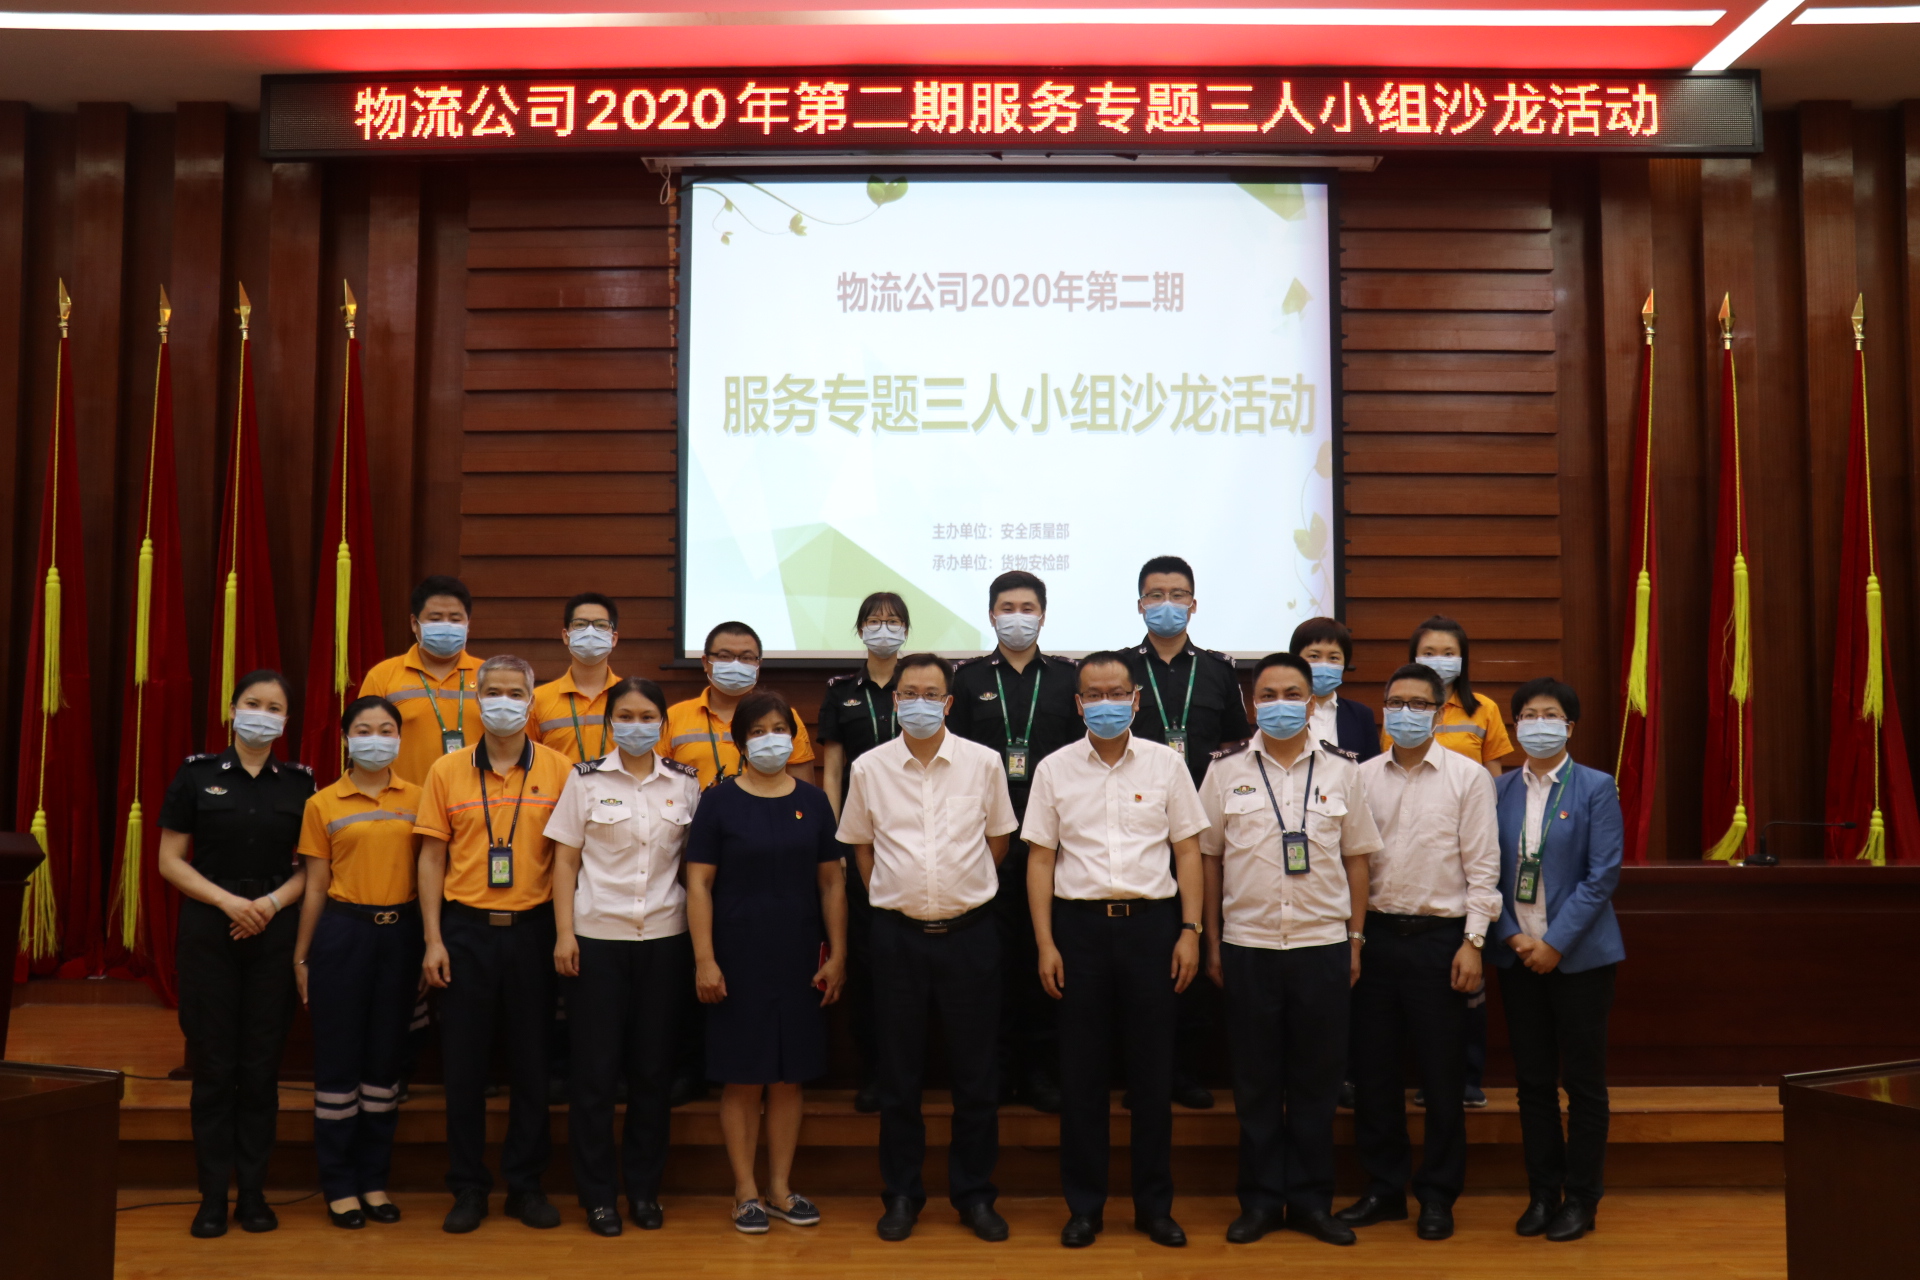 广东机场集团物流有限公司2020年度第二期服务专题“三人小组”沙龙活动圆满举行